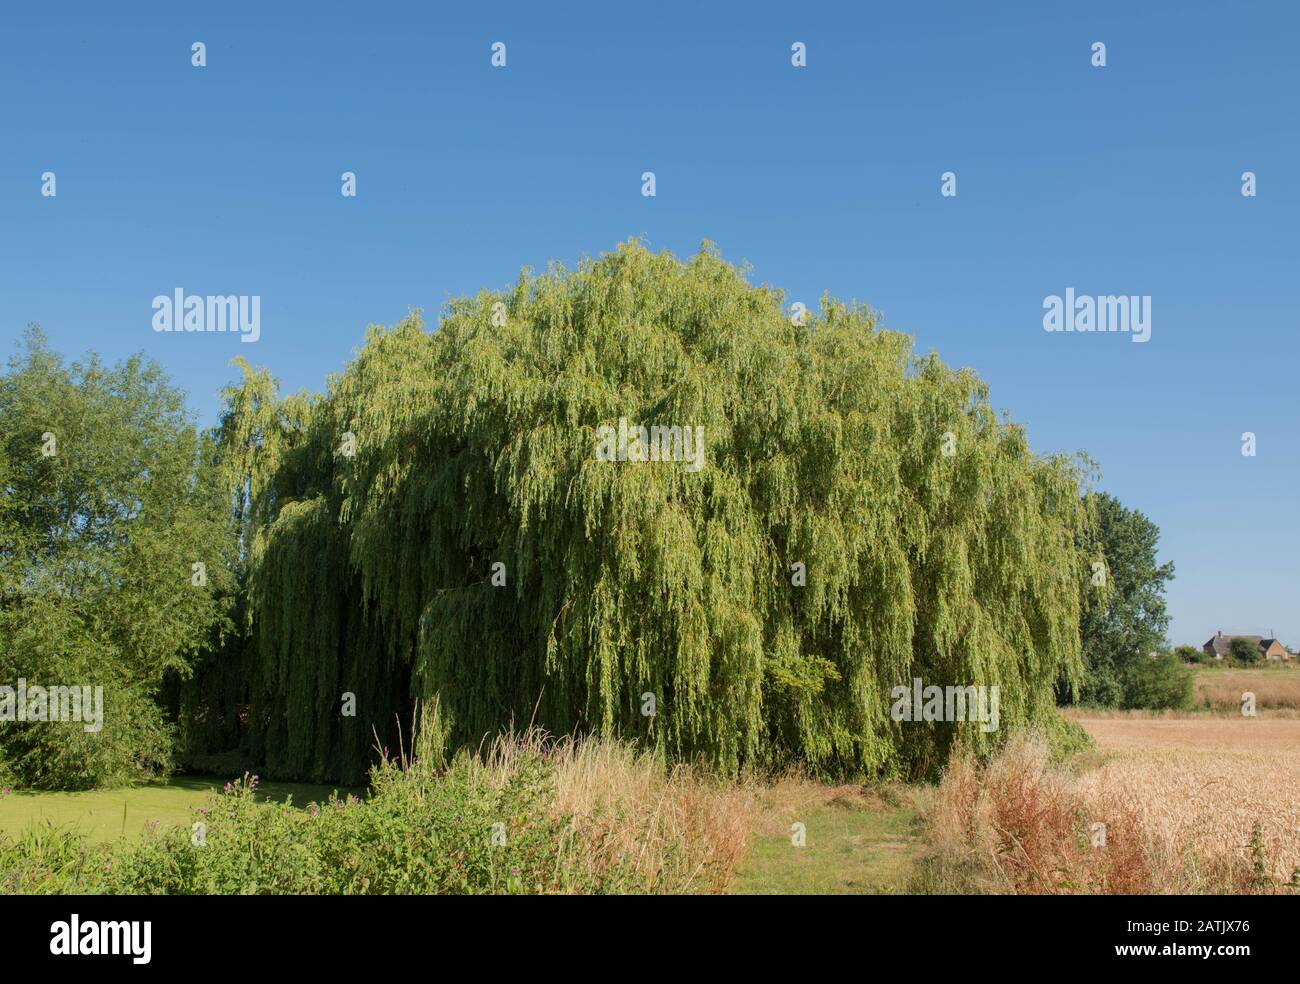 Arbre de saule pleurant (Salix babylonica) sur Le Côté d'un étang Recouvert de Duckweed dans un jardin de campagne dans le Warwickshire rural, Angleterre, Royaume-Uni Banque D'Images